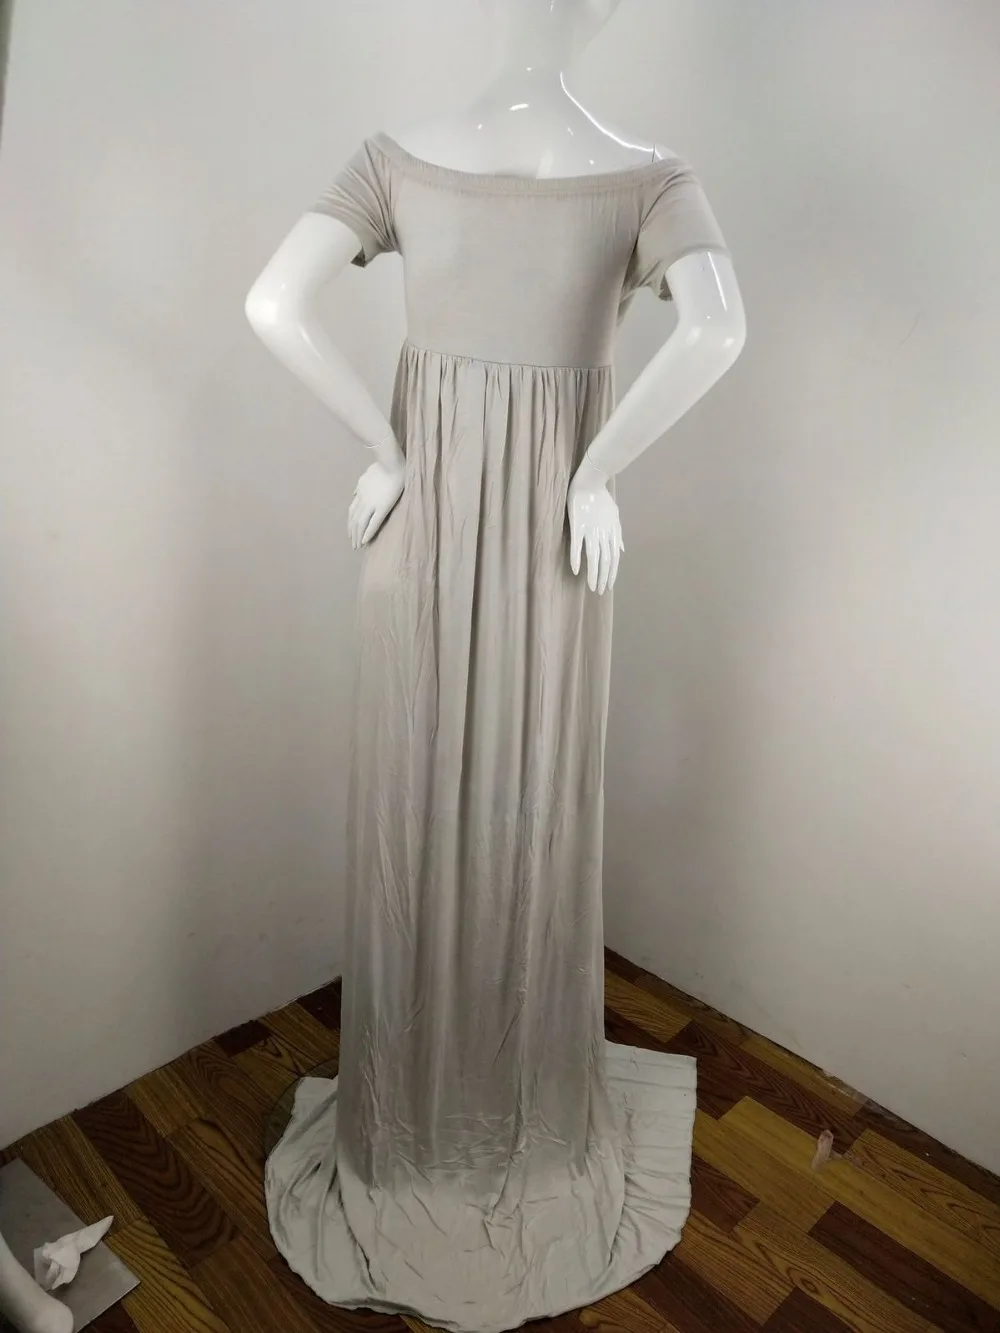 Новая одежда для фотографии реквизит платье для беременных на лето женские; с открытыми плечами Длинные Макси платье Свадебная вечеринка платья женщин размеры